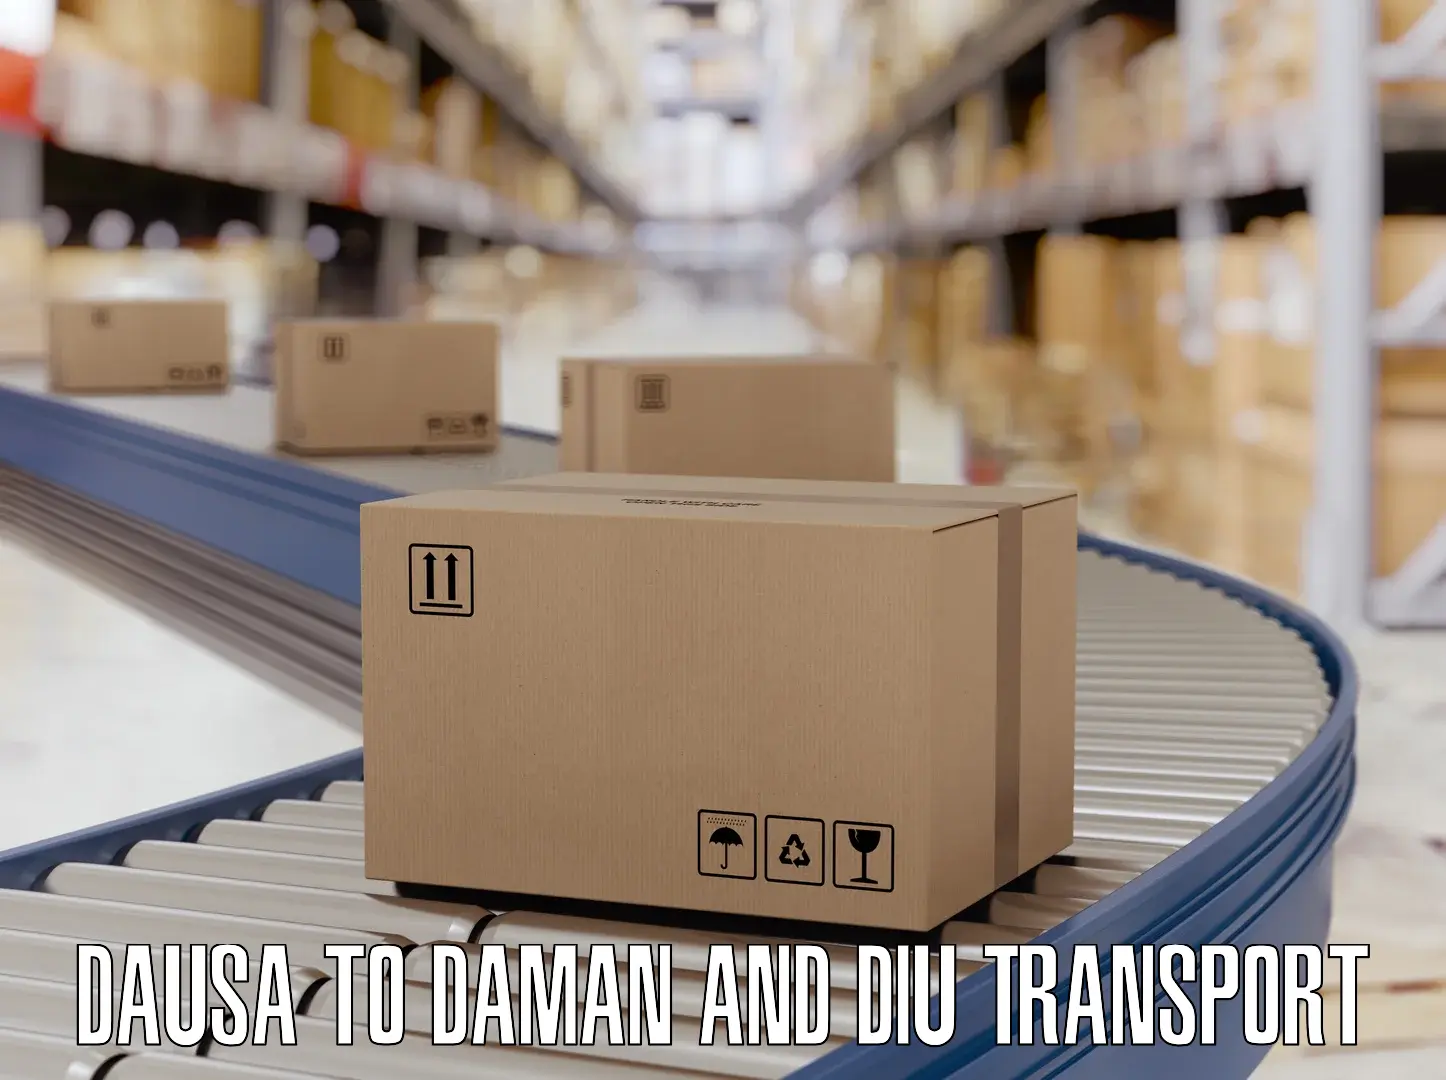 Transport shared services Dausa to Daman and Diu